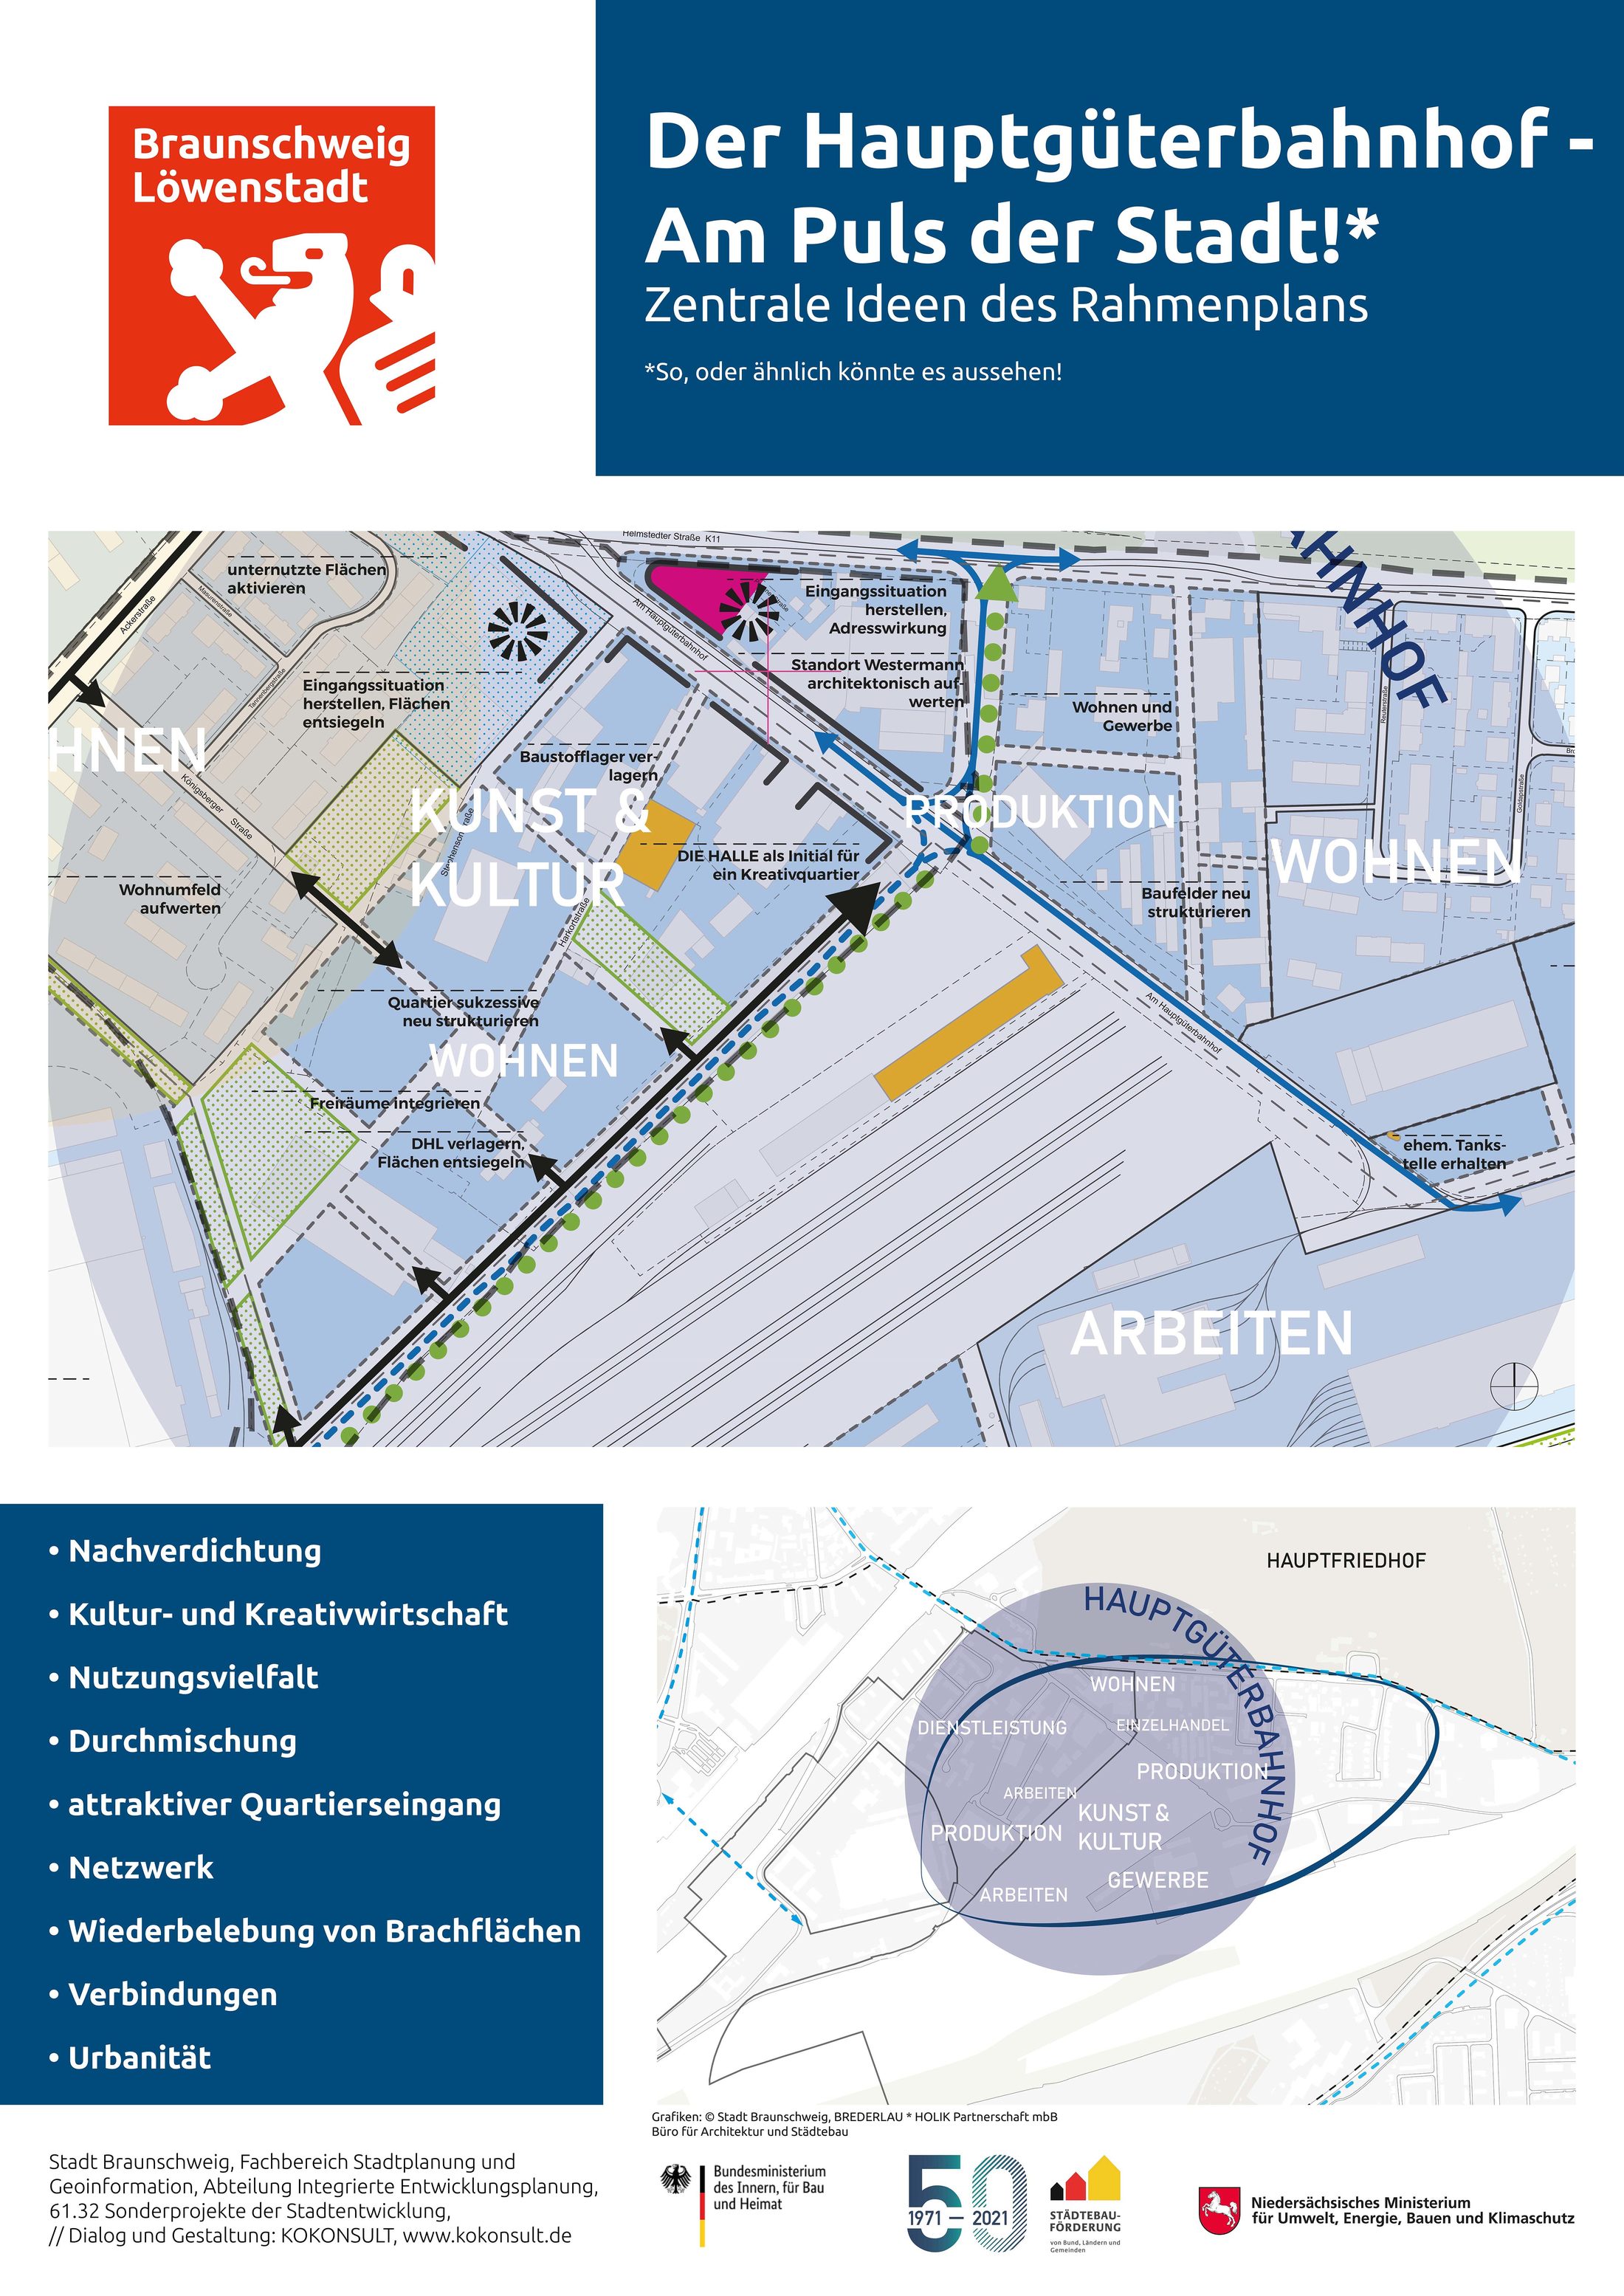 Plakat "Der Hauptgüterbahnhof - Am Puls der Stadt! - Zentrale Ideen des Rahmenplans" (Wird bei Klick vergrößert)